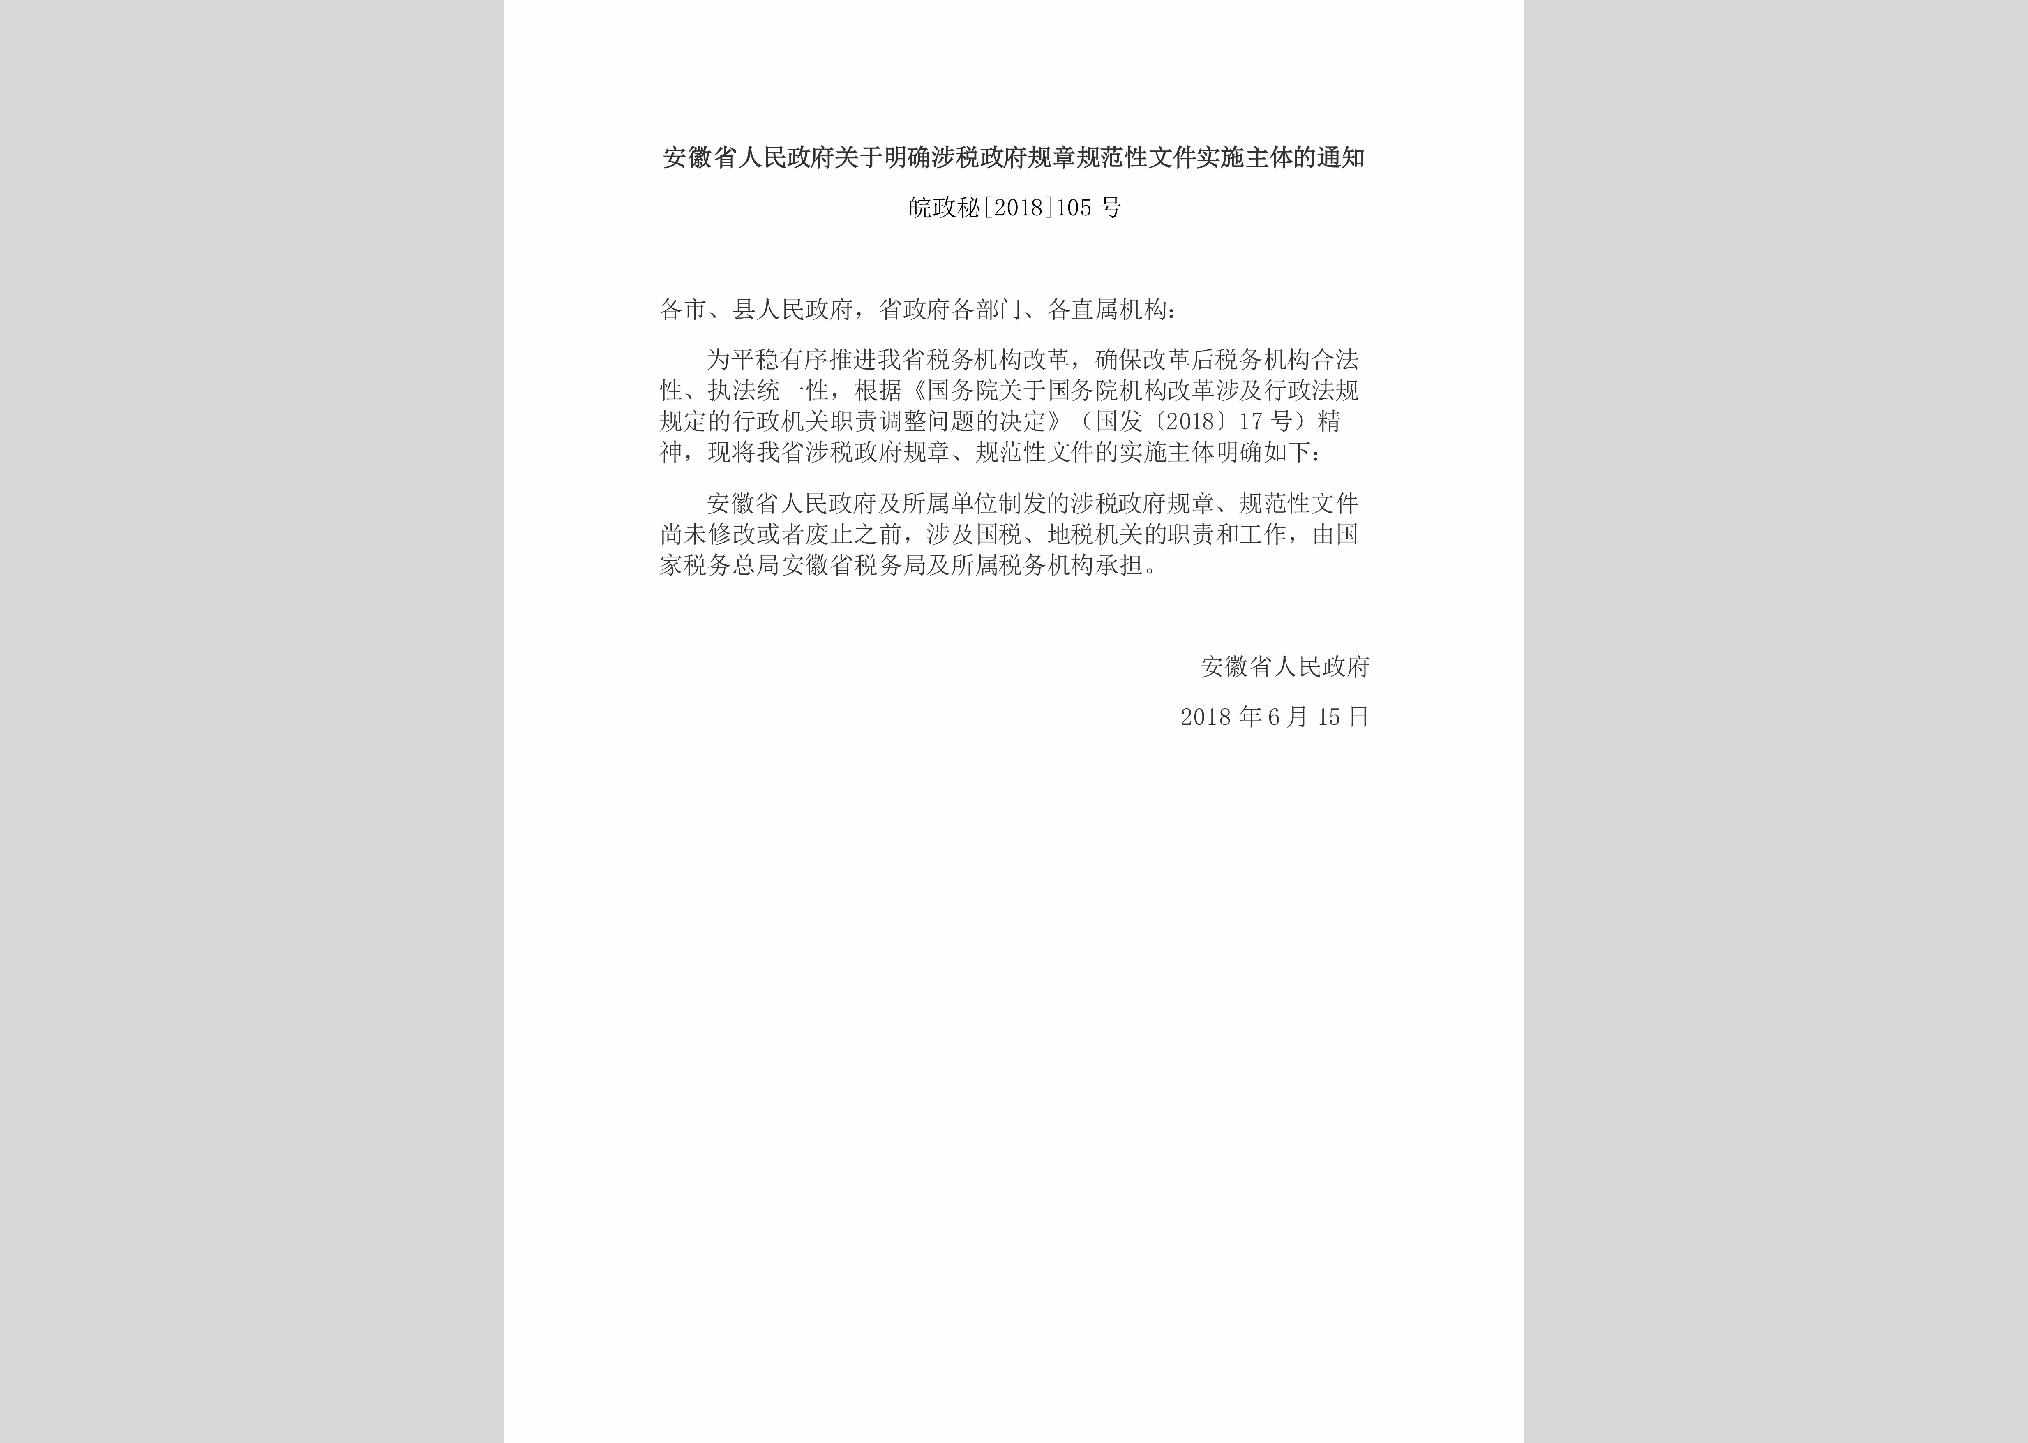 皖政秘[2018]105号：安徽省人民政府关于明确涉税政府规章规范性文件实施主体的通知